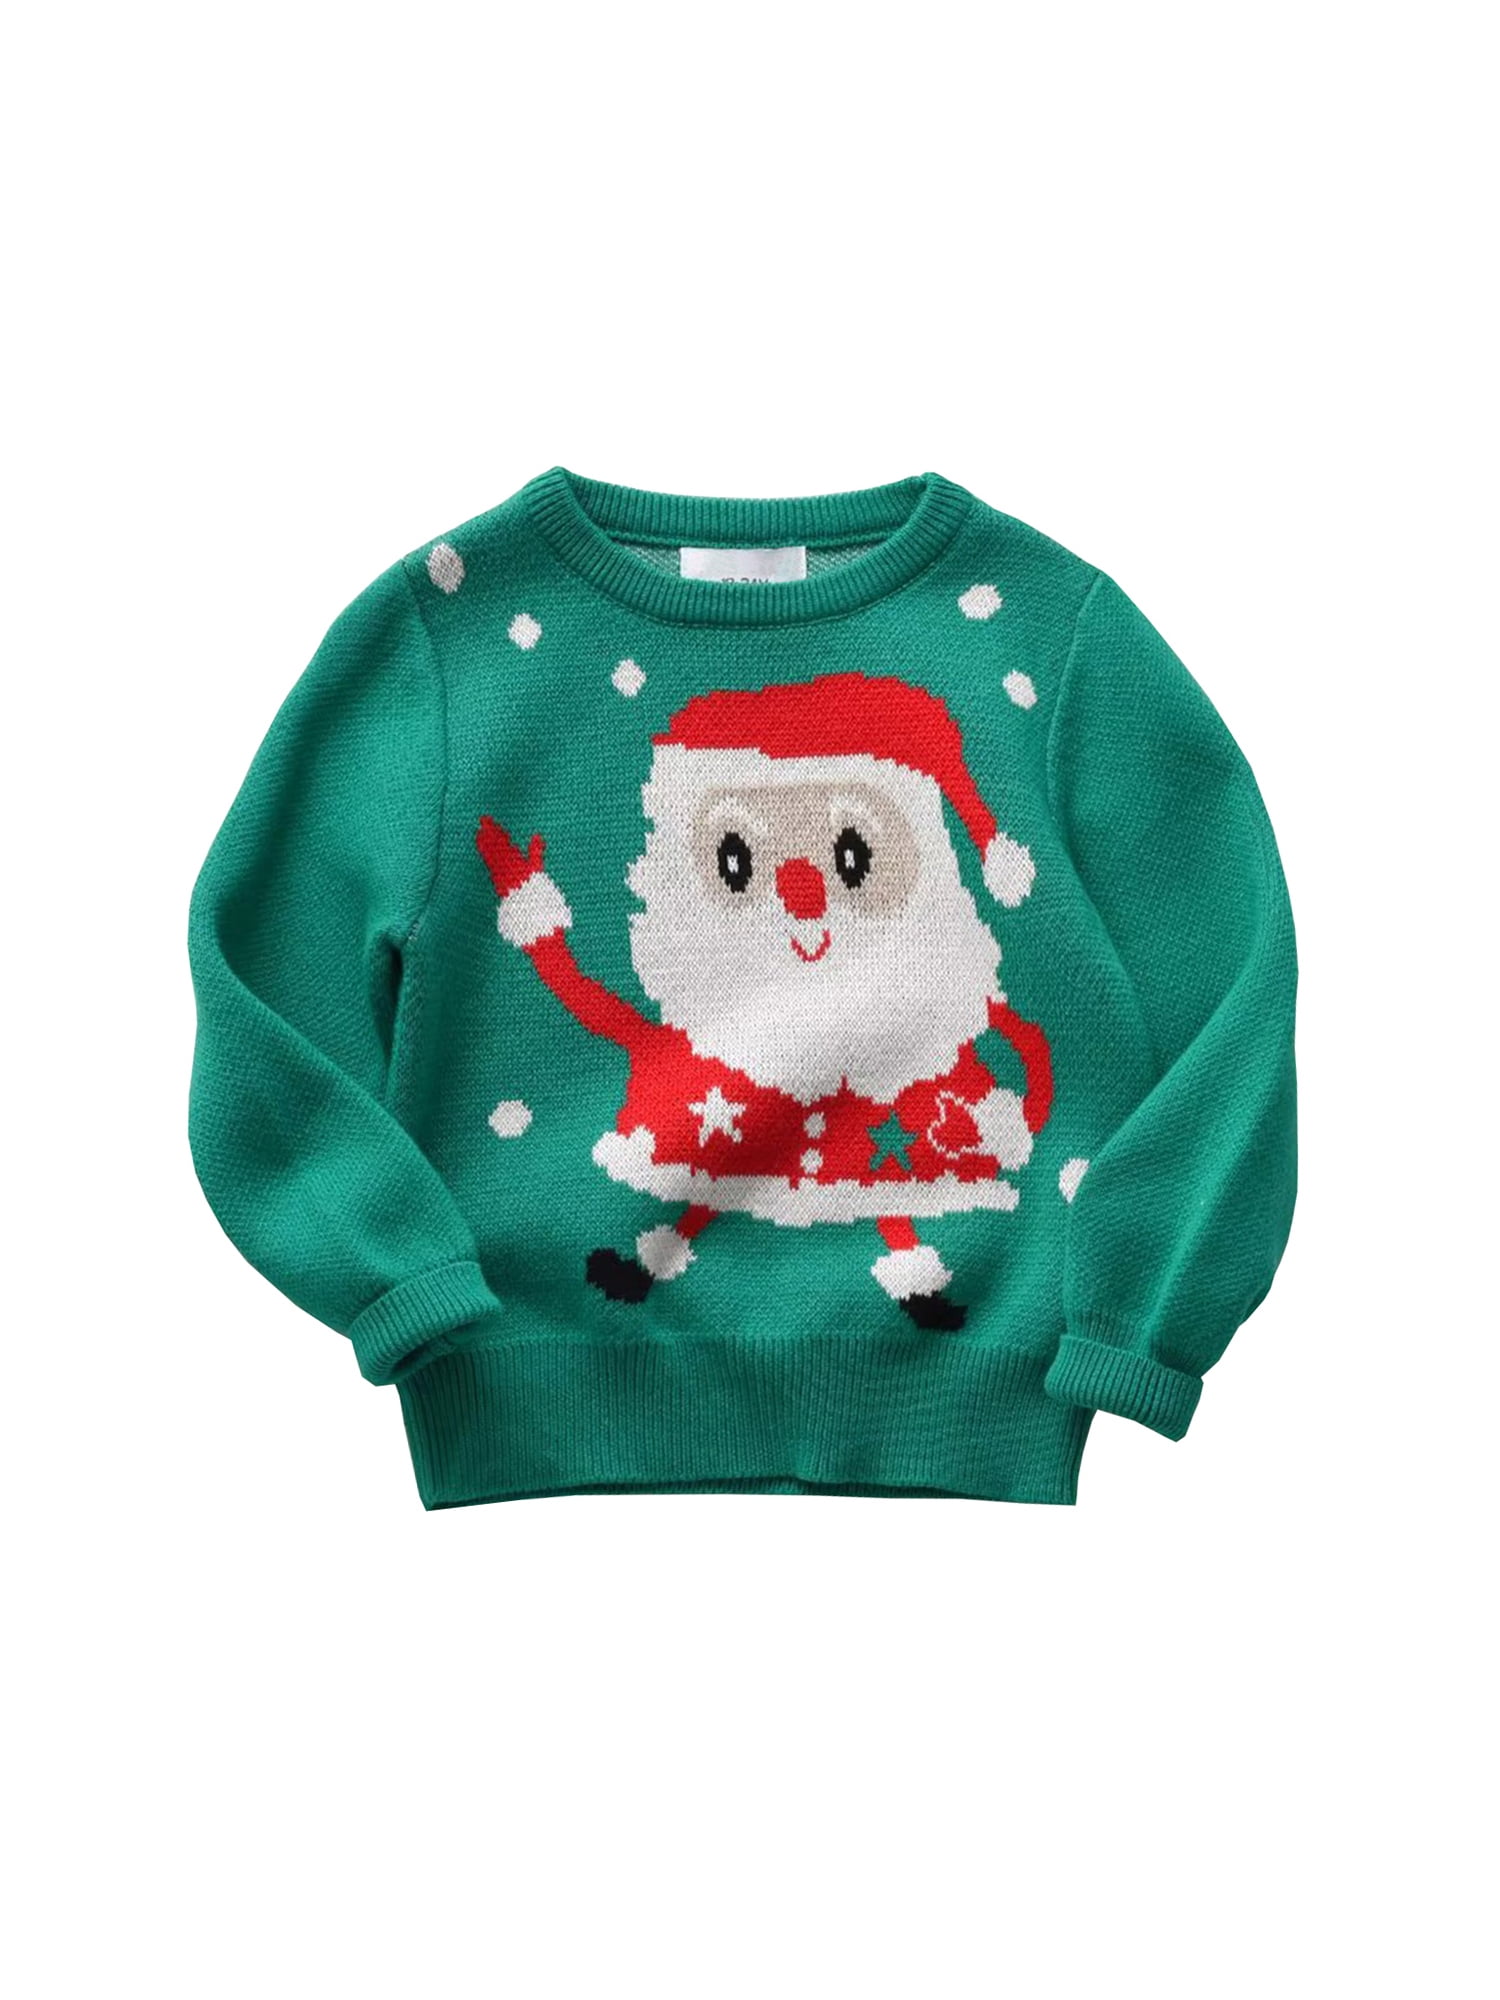 Baby Boy Girl Christmas Sweater Toddler Ugly Christmas Sweatshirt Kid ...